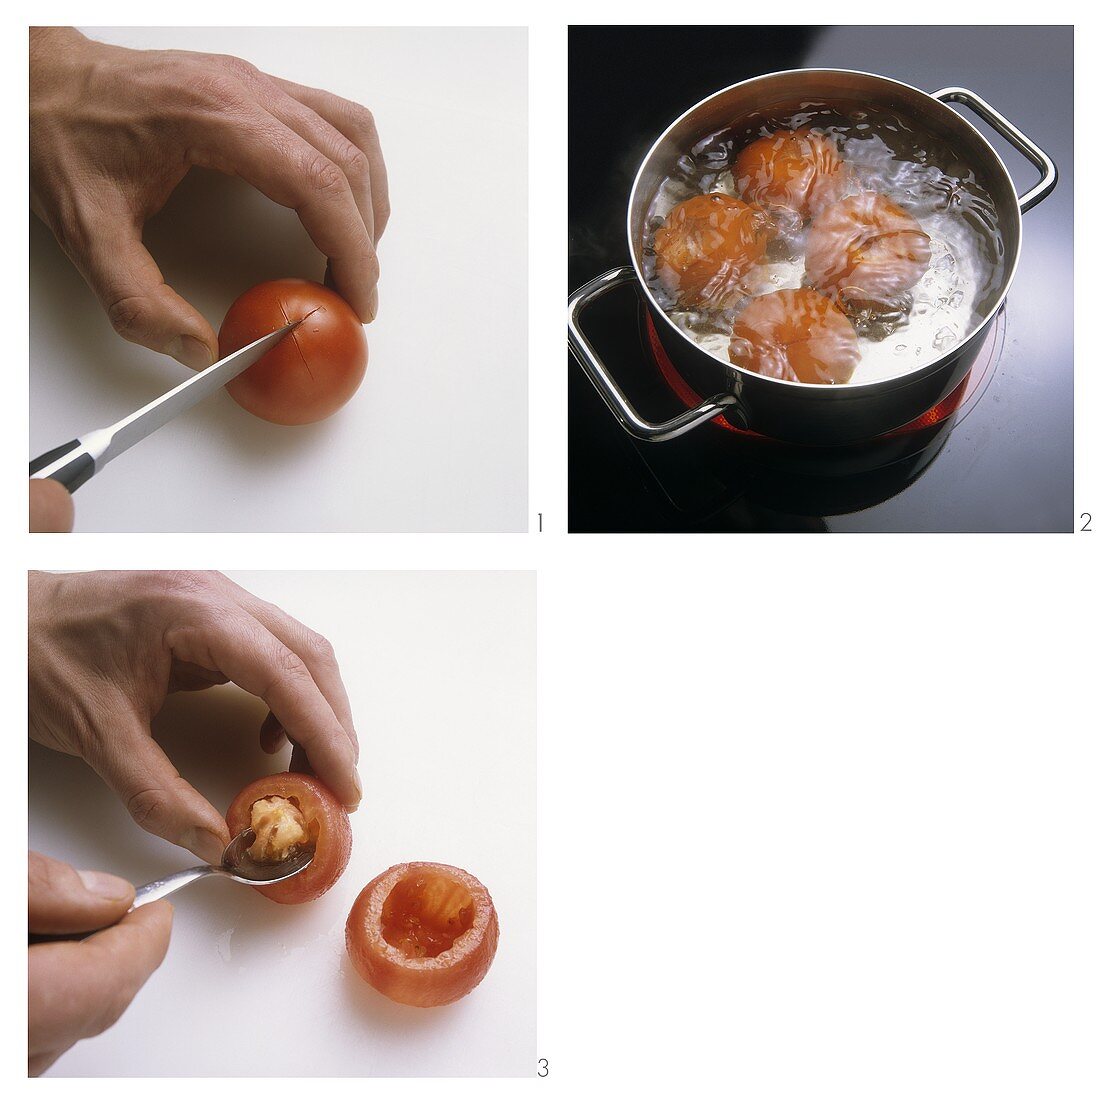 Tomaten einschneiden, blanchieren und aushöhlen